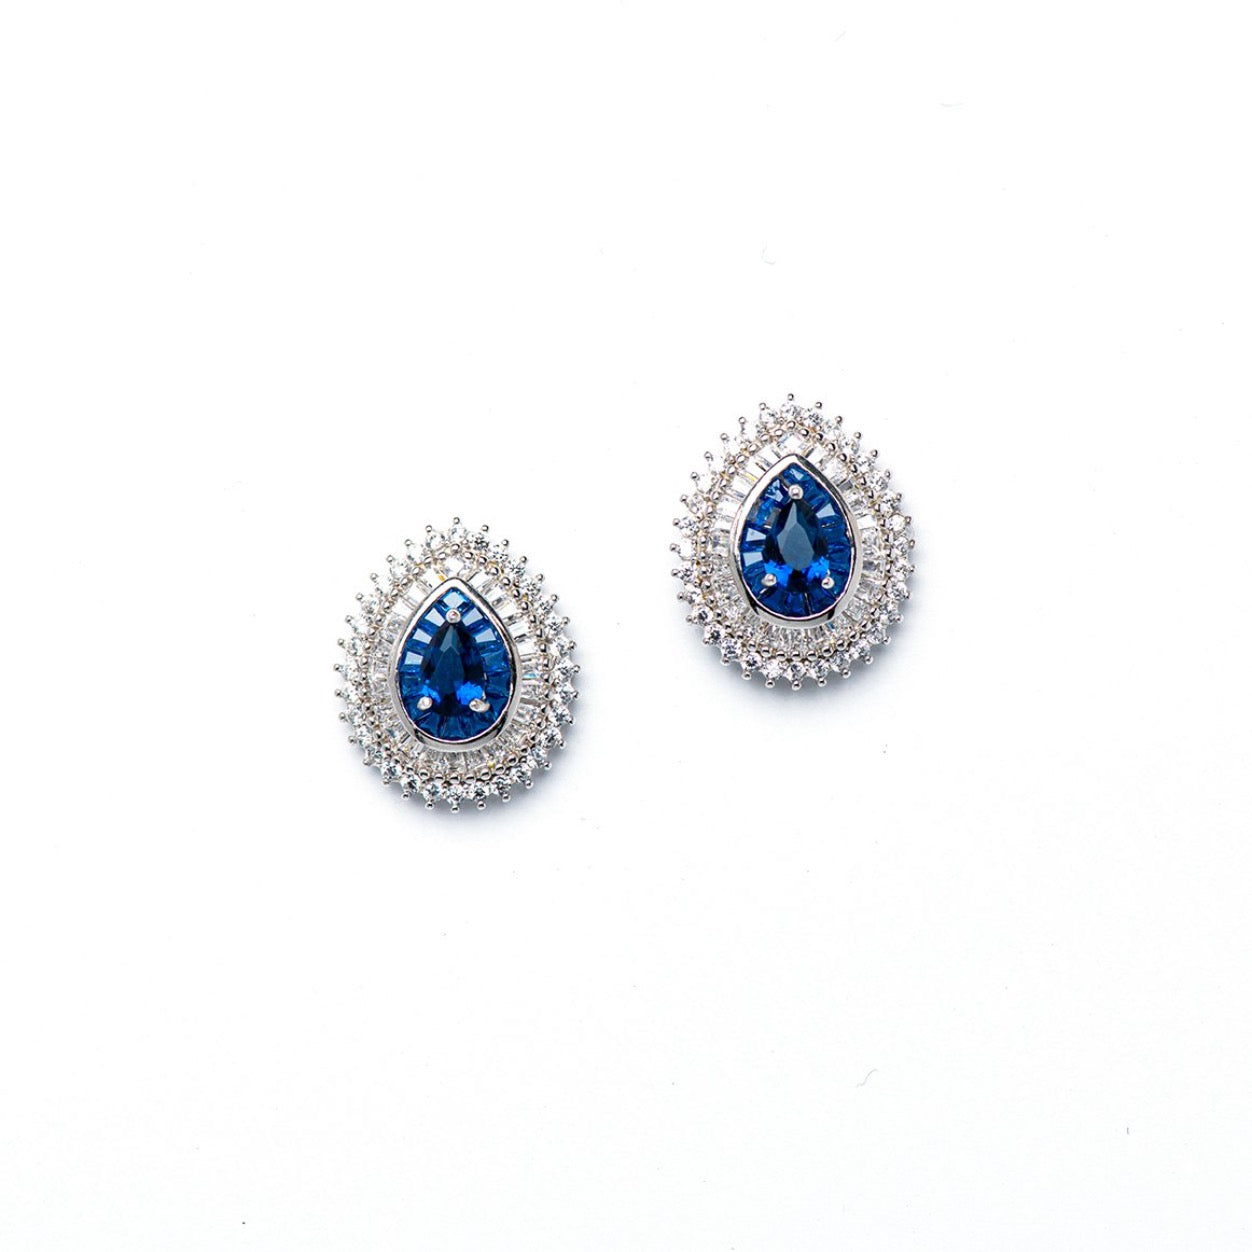 DK-925-094 bleu water droplets earrings